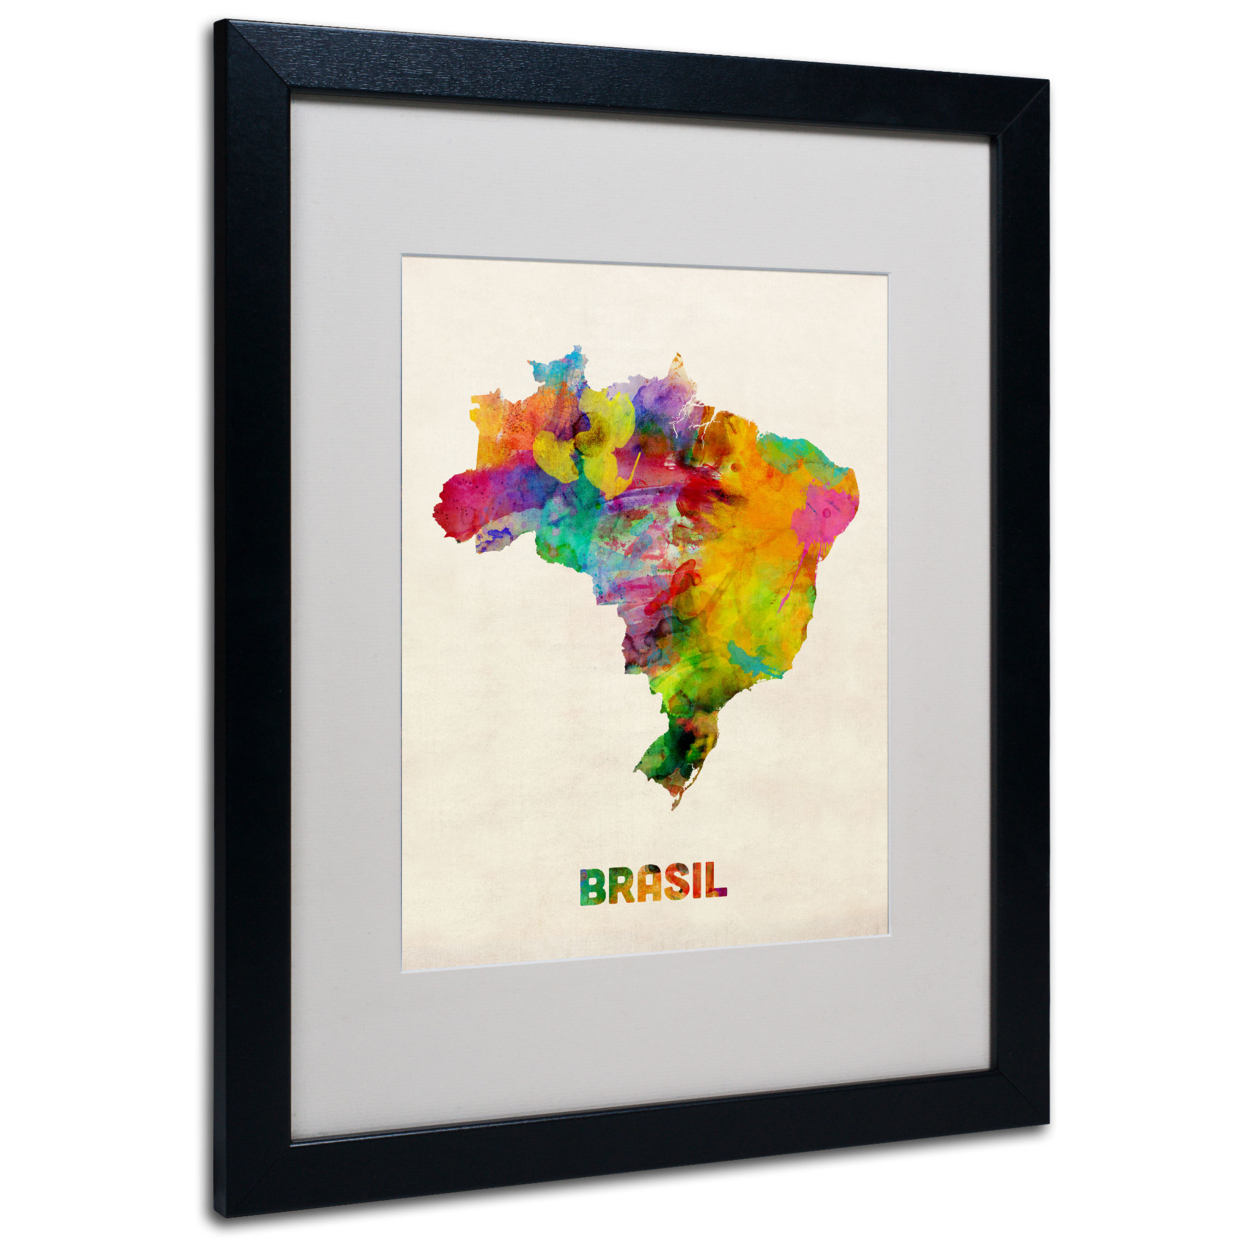 Michael Tompsett 'Brasil Watercolor Map' Black Wooden Framed Art 18 X 22 Inches